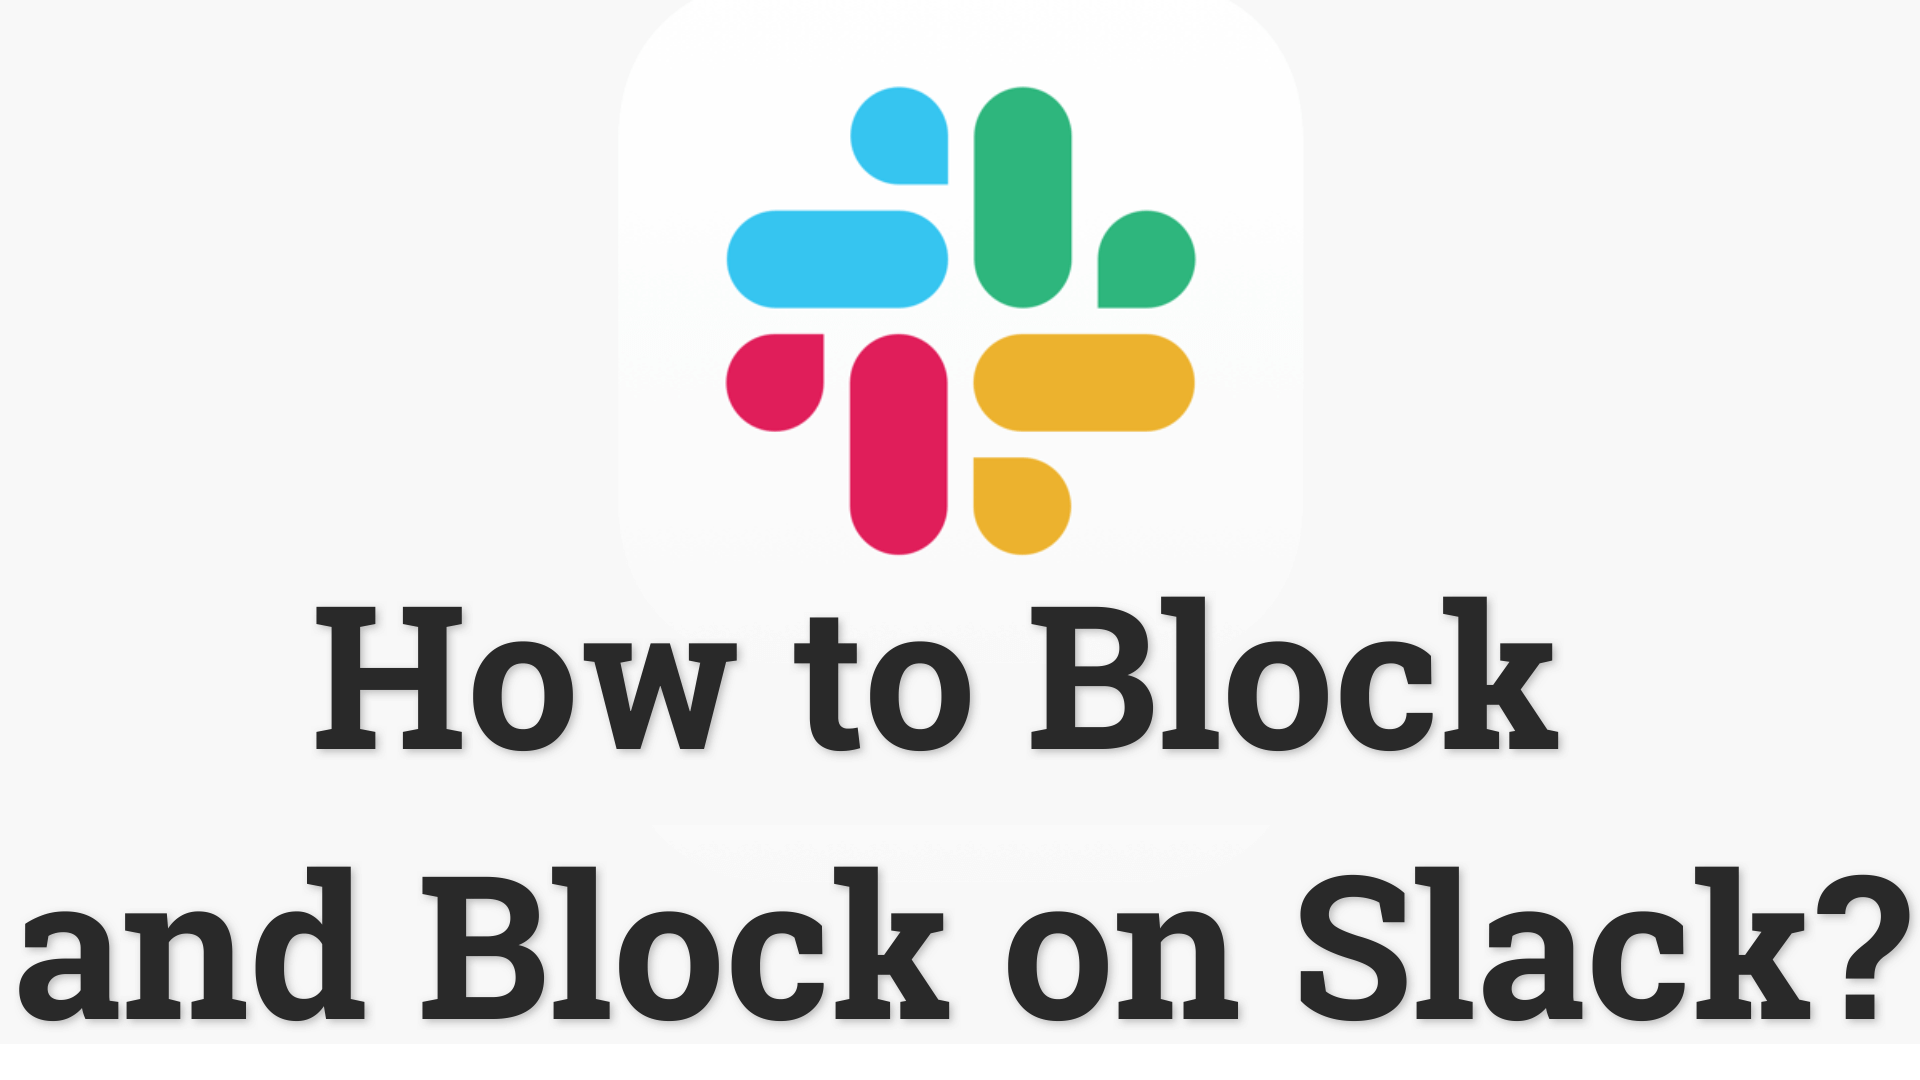 ¿Cómo Bloquear Slack y Bloquear a Alguien en Slack?